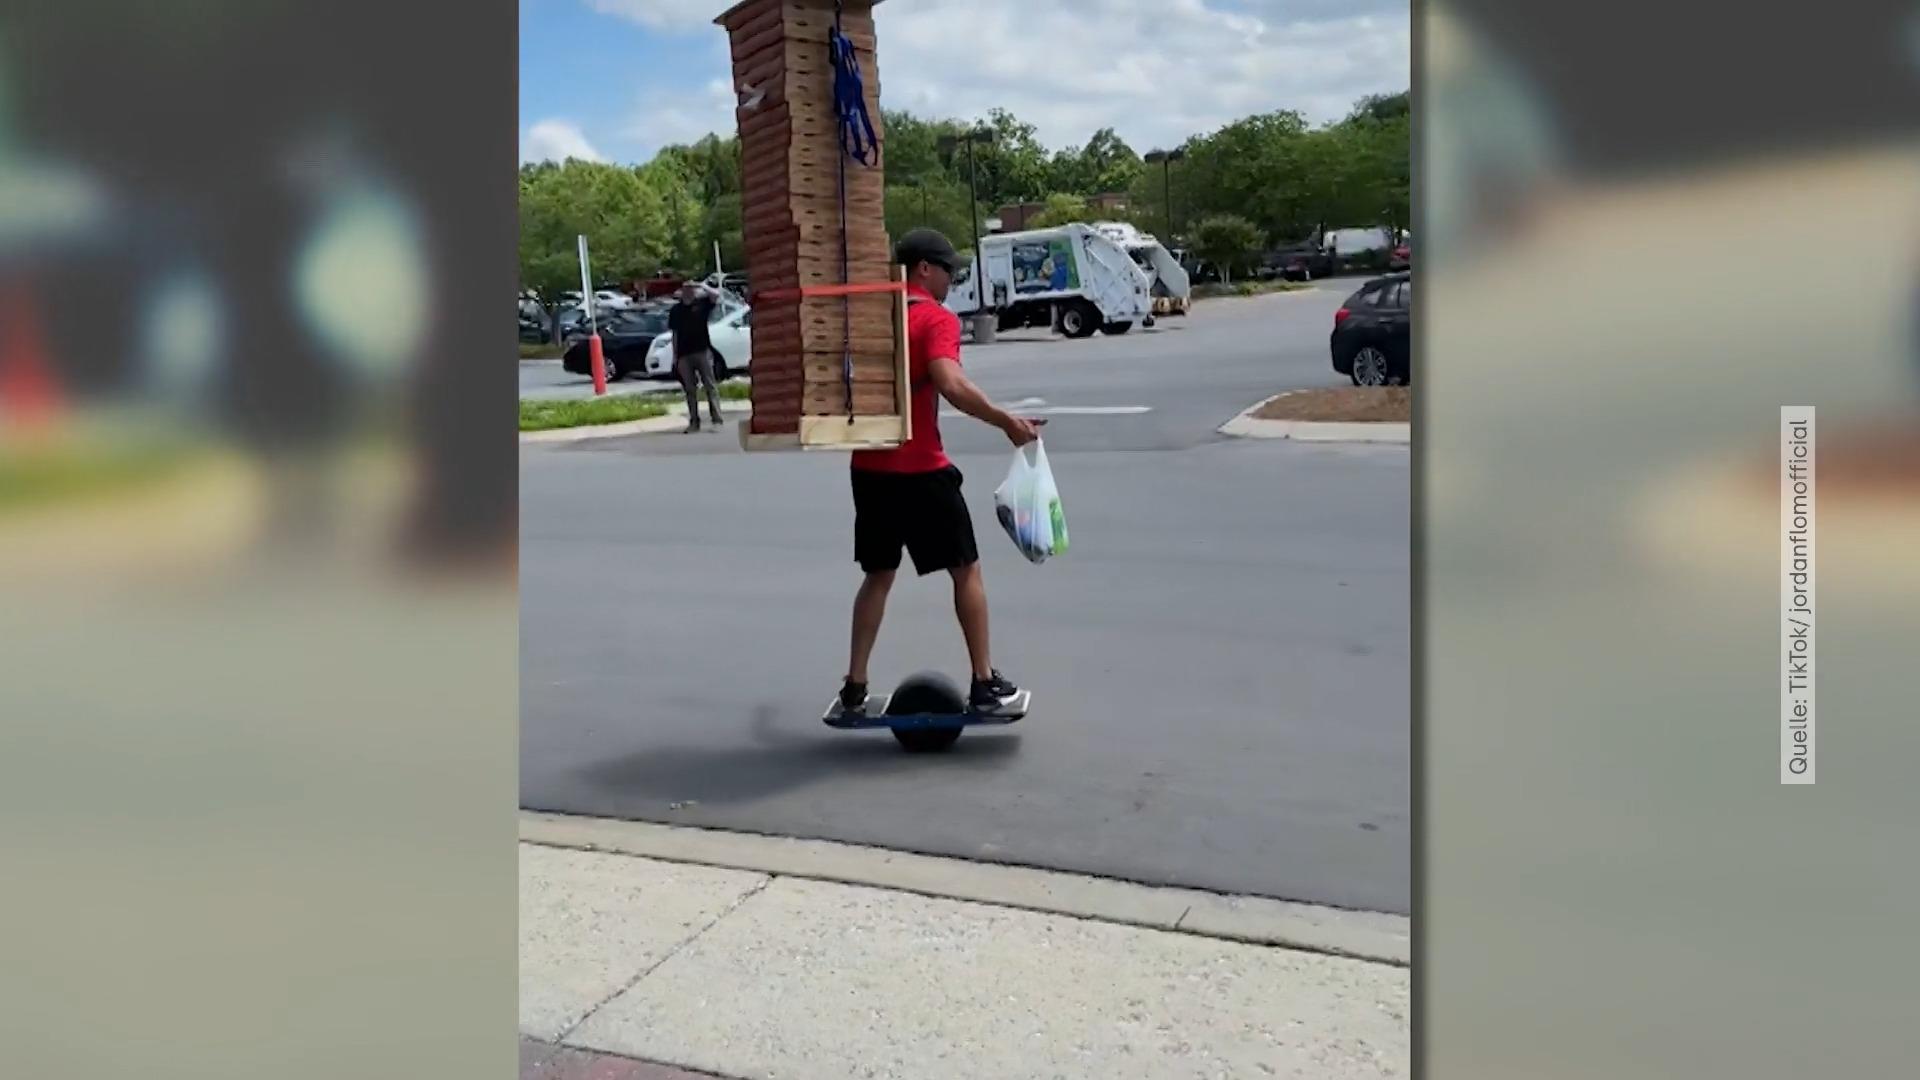 Lieferant transportiert 30 Pizzen auf Einrad So ein Hochstapler!